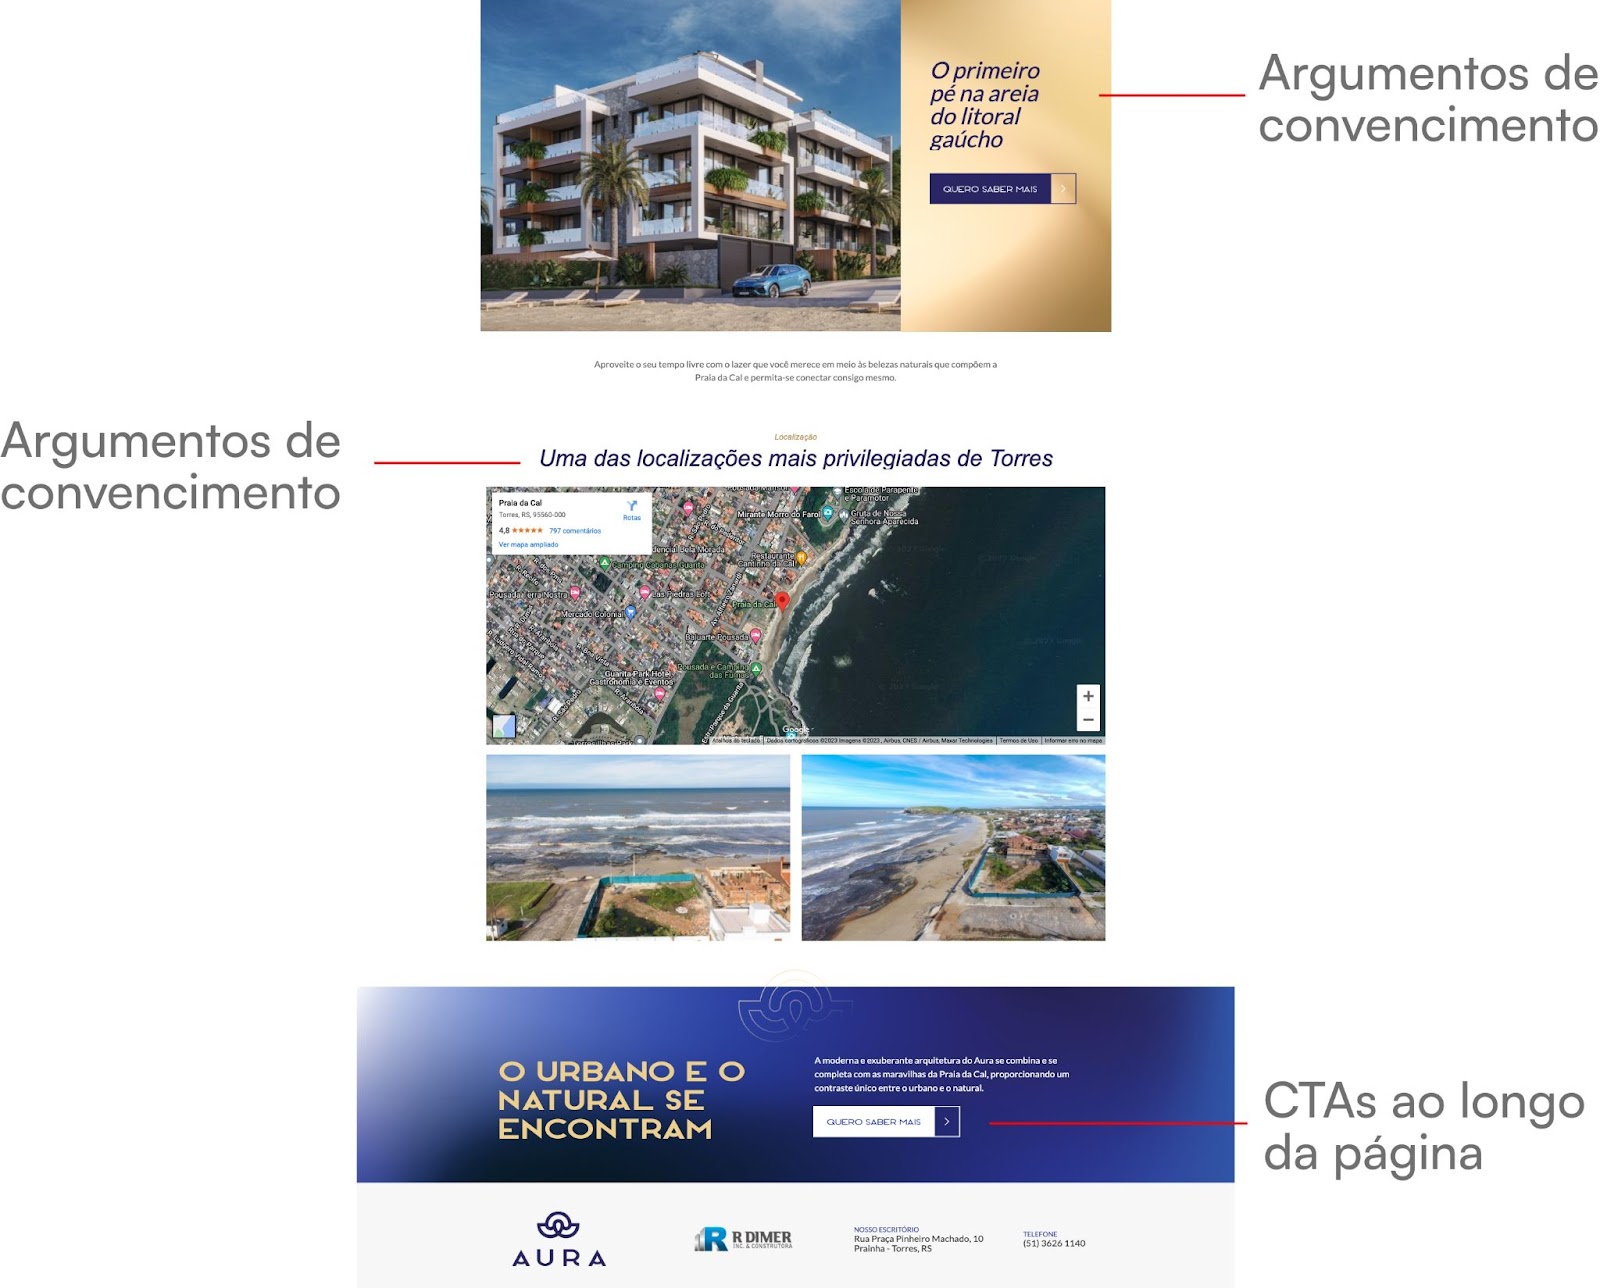 Exemplo de uma landing page com elementos essenciais, como: título chamativo, formulário de contato, características das unidades, argumentos para convencer o visitante e CTAs ao longo da página.